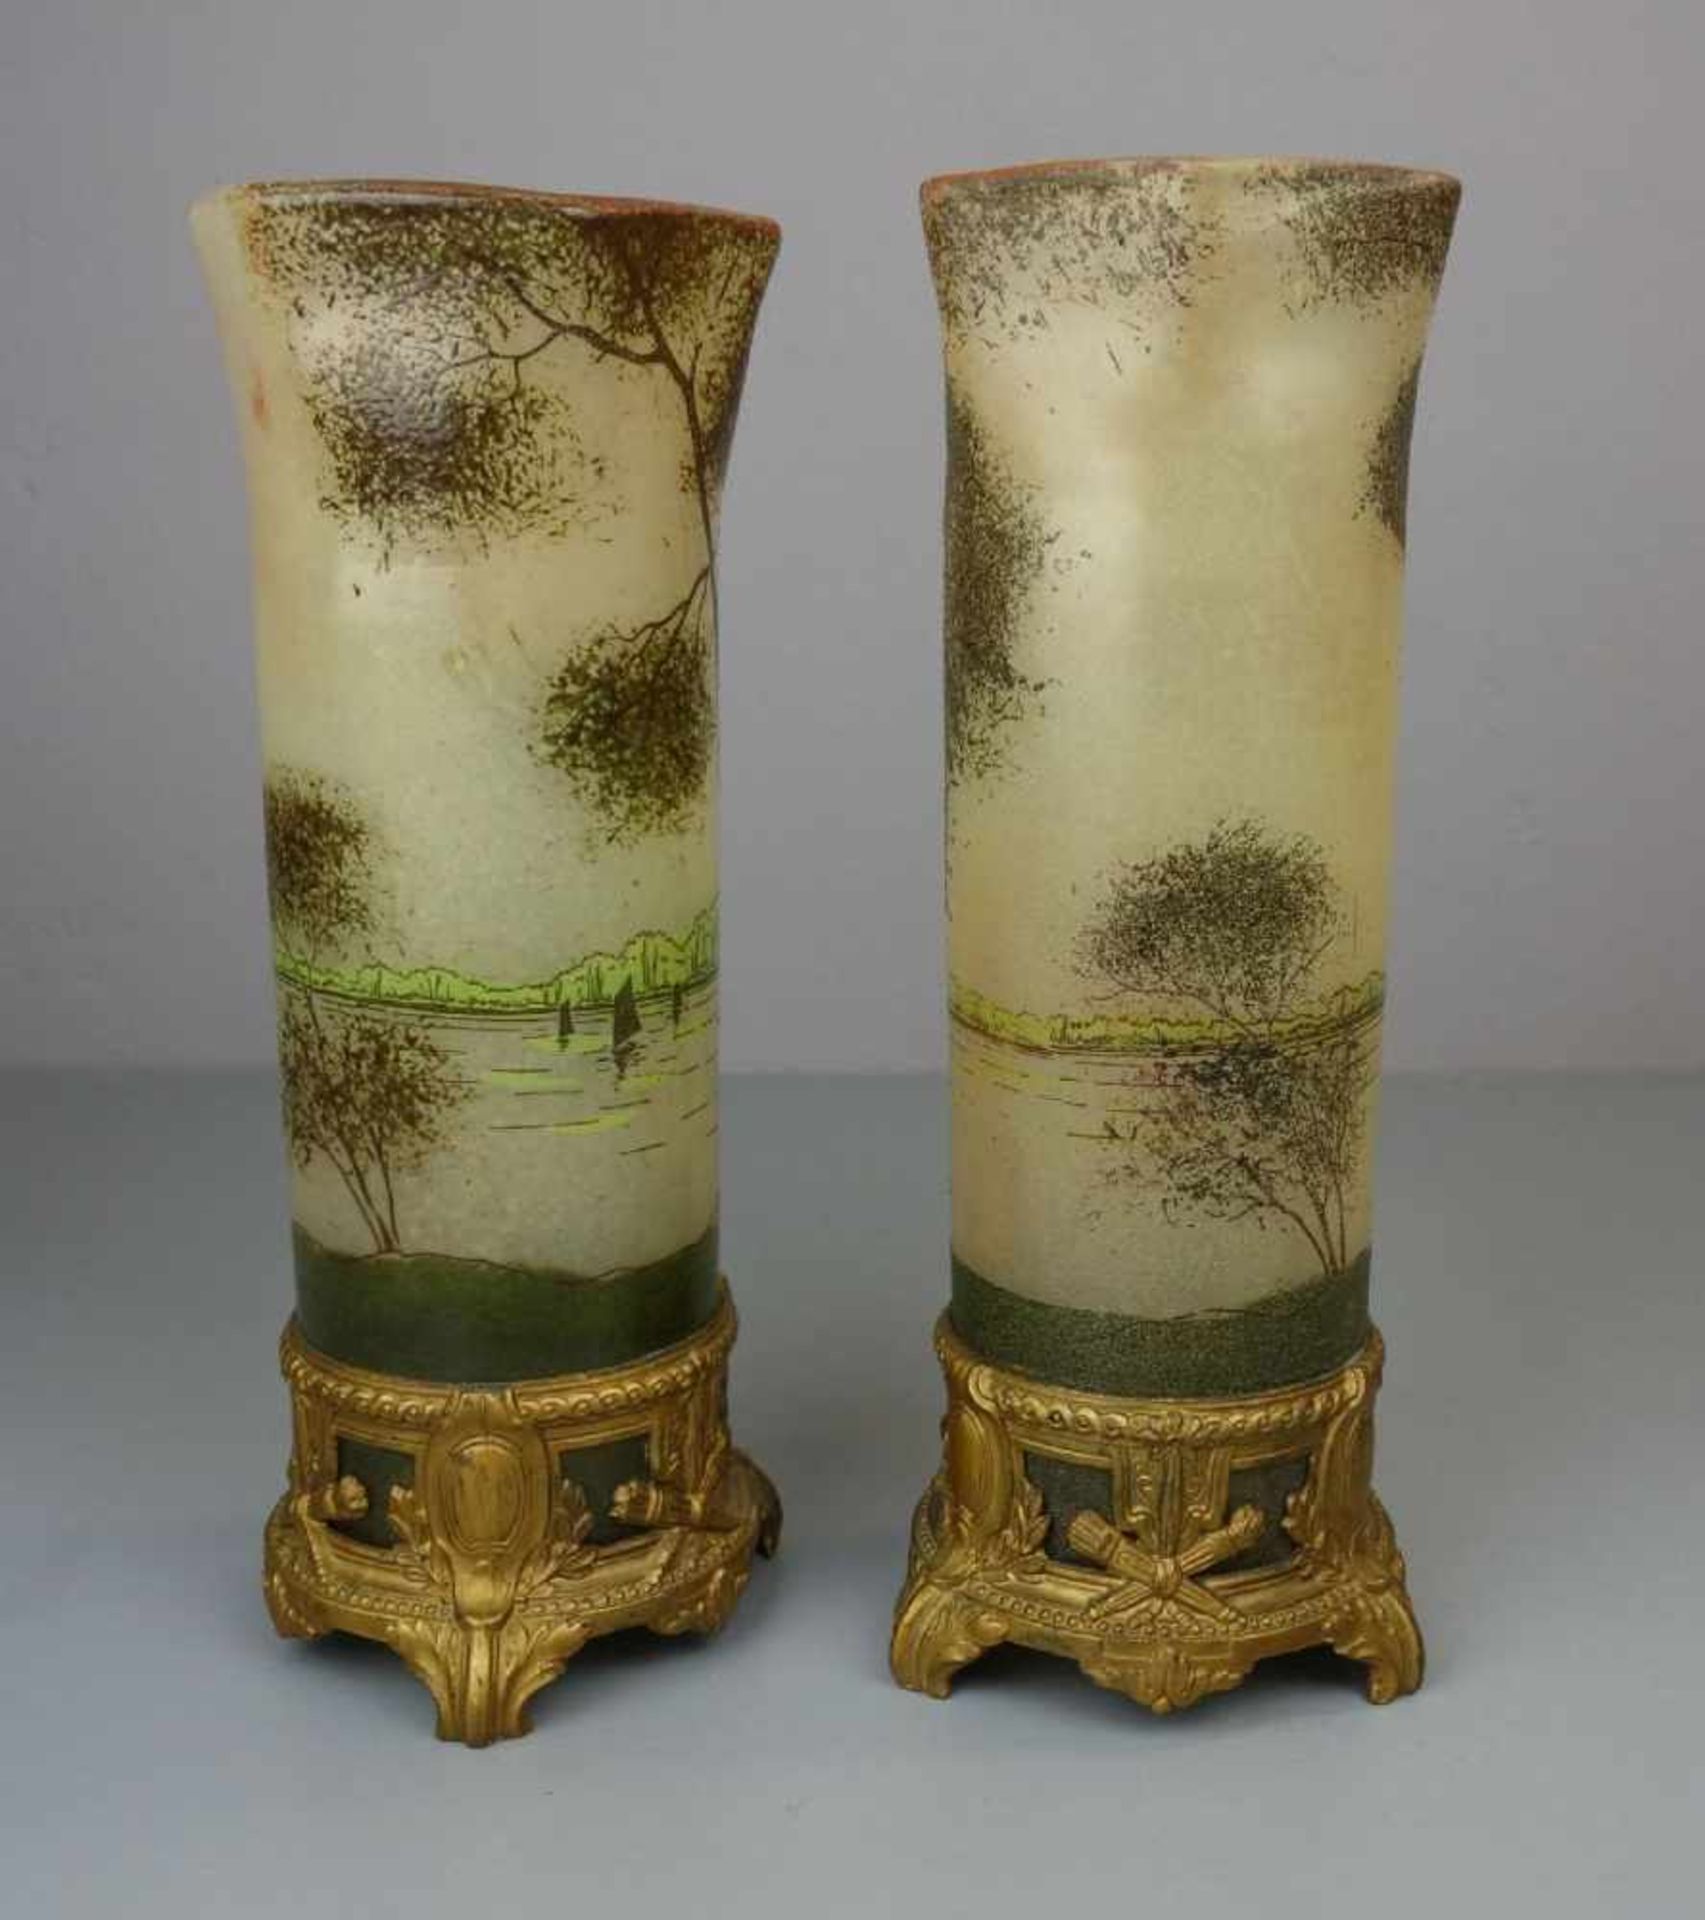 PAAR JUGENDSTILVASEN MIT LANDSCHAFTSMOTIV UND METALLMONTUREN / pair of art nouveau vases with - Image 4 of 6